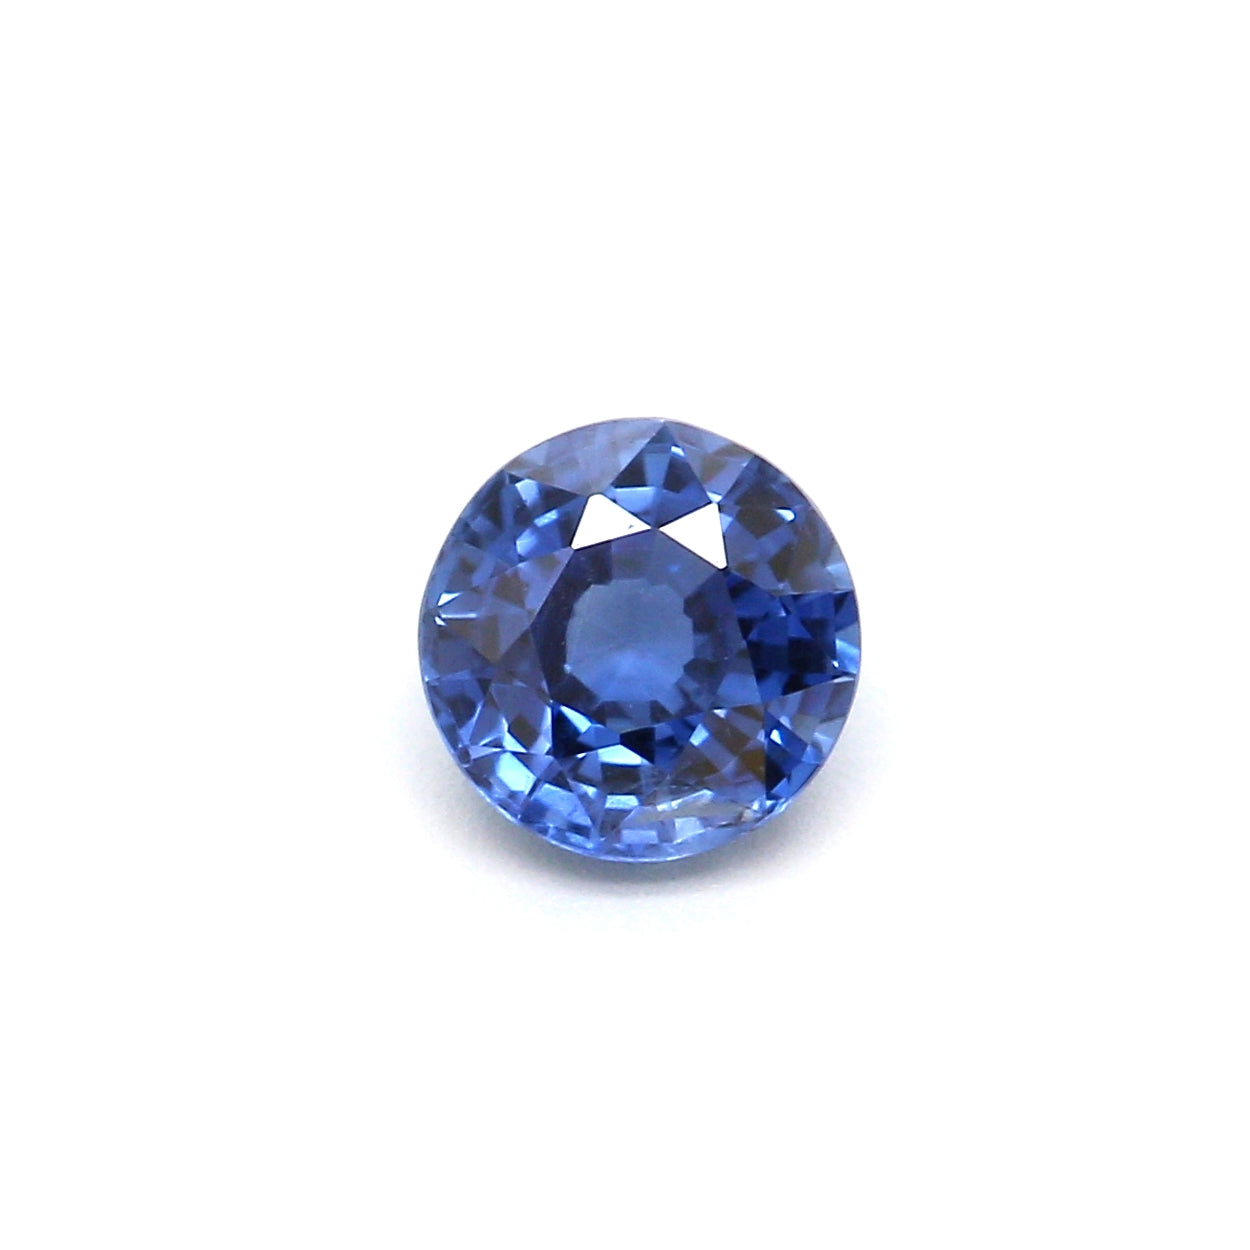 0.56ct Round Sapphire, Heated, Thailand - 4.79 x 4.90 x 2.95mm